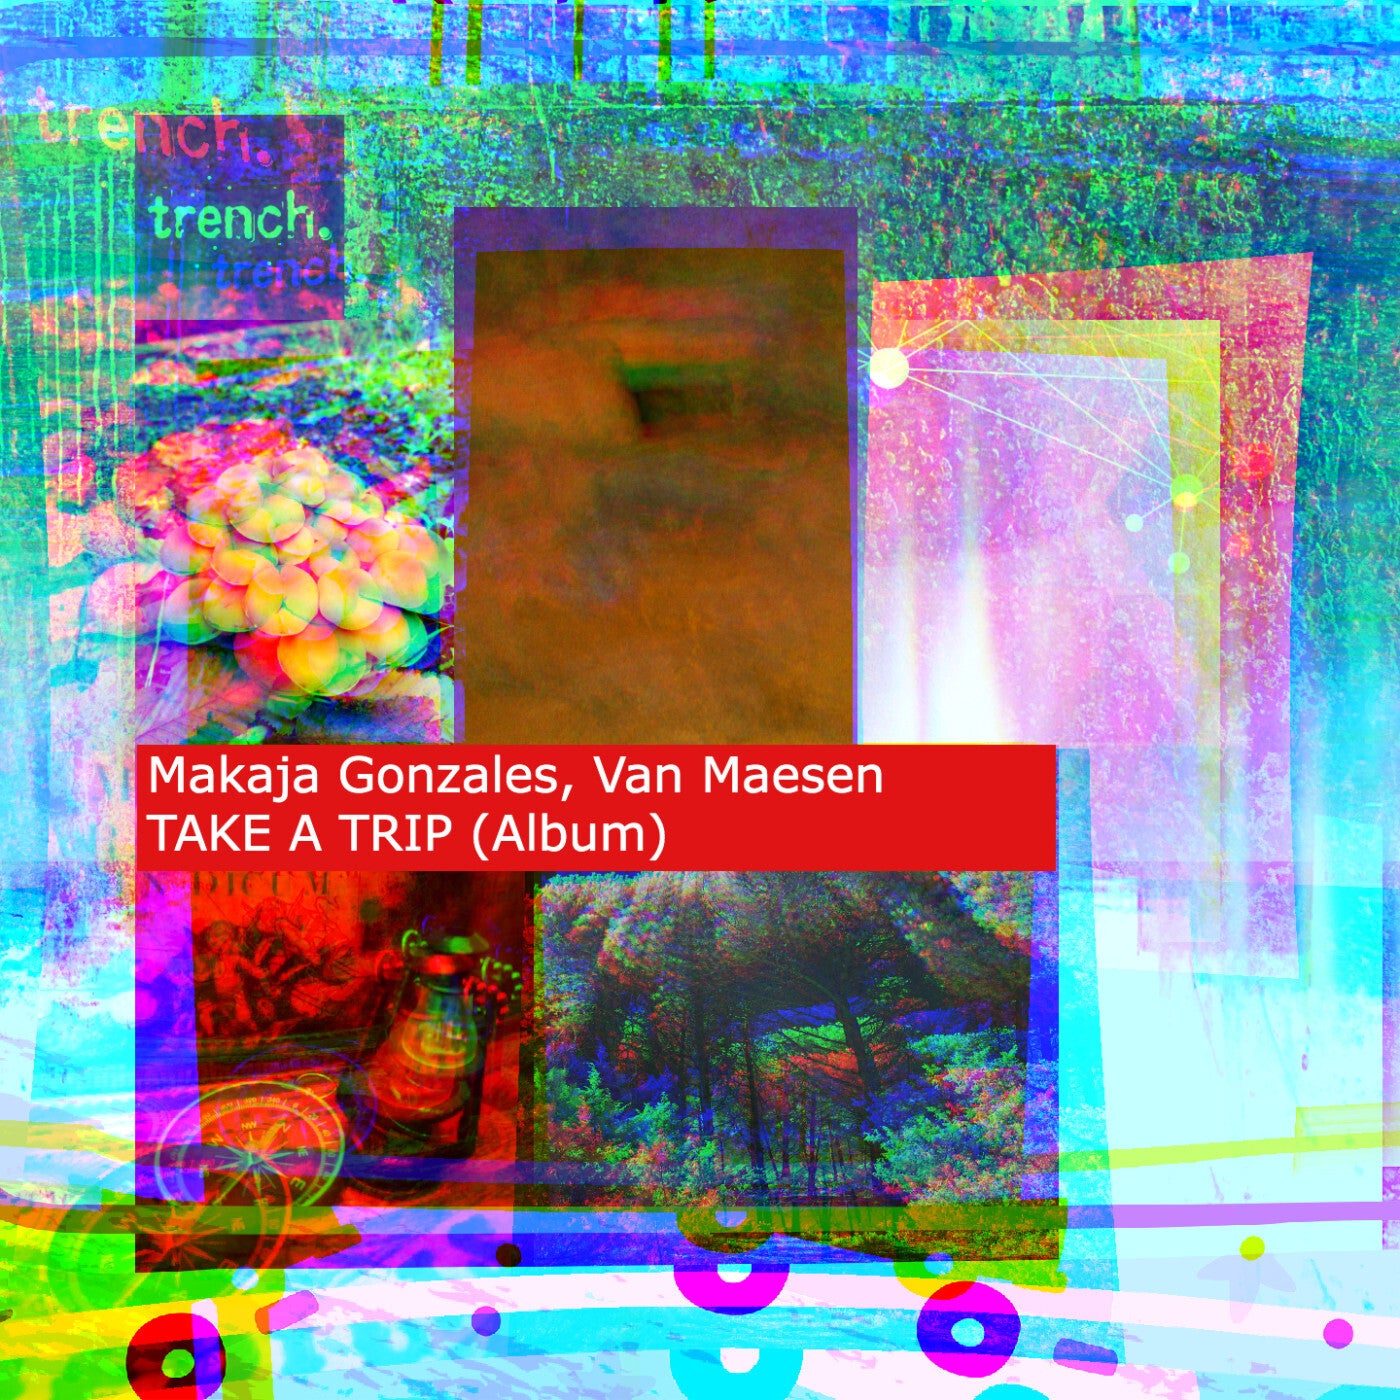 TAKE A TRIP (Album)